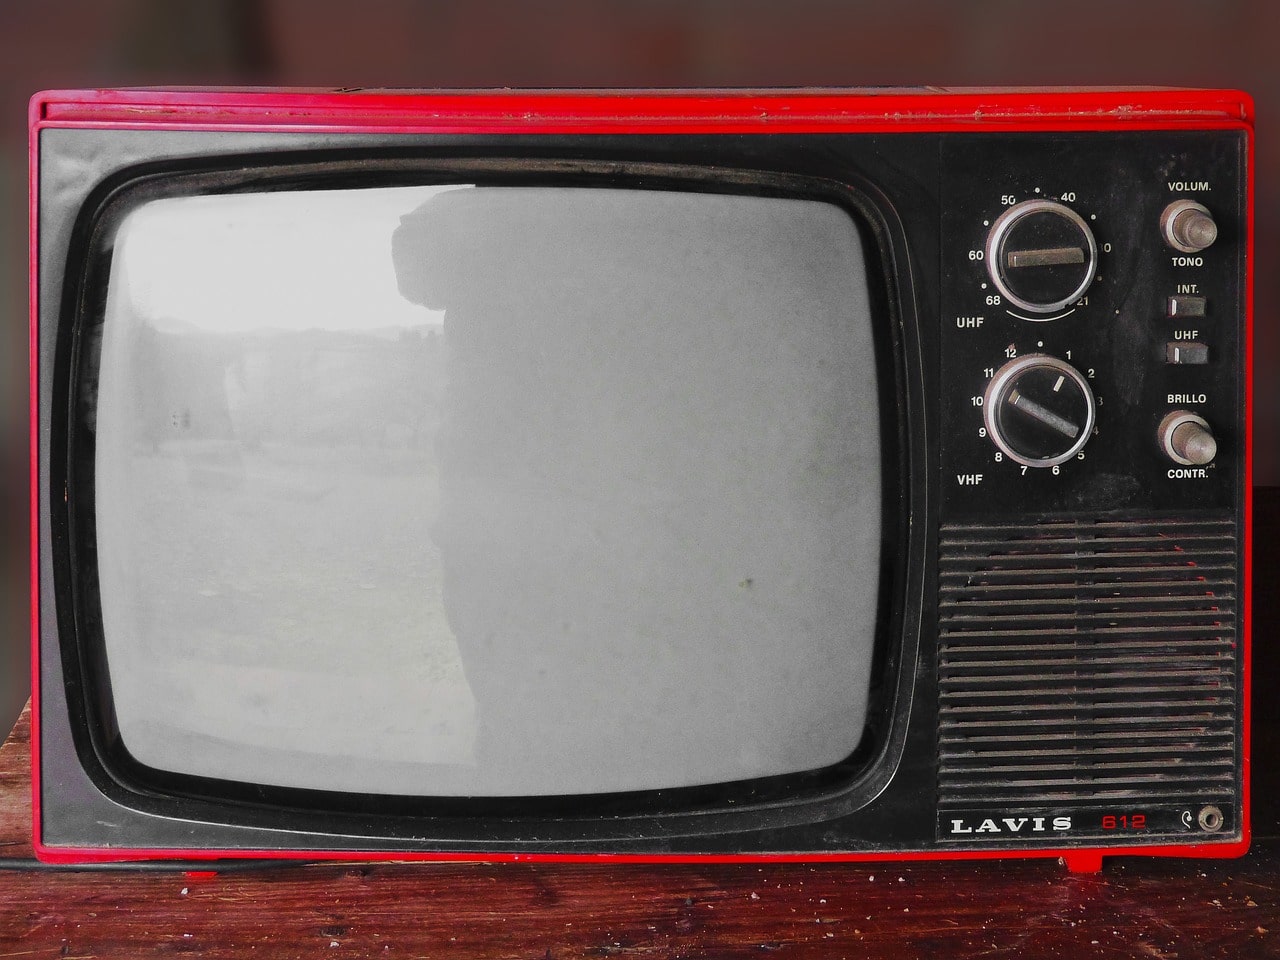 빨간색 티비가 서랍장 위에 있는 사진